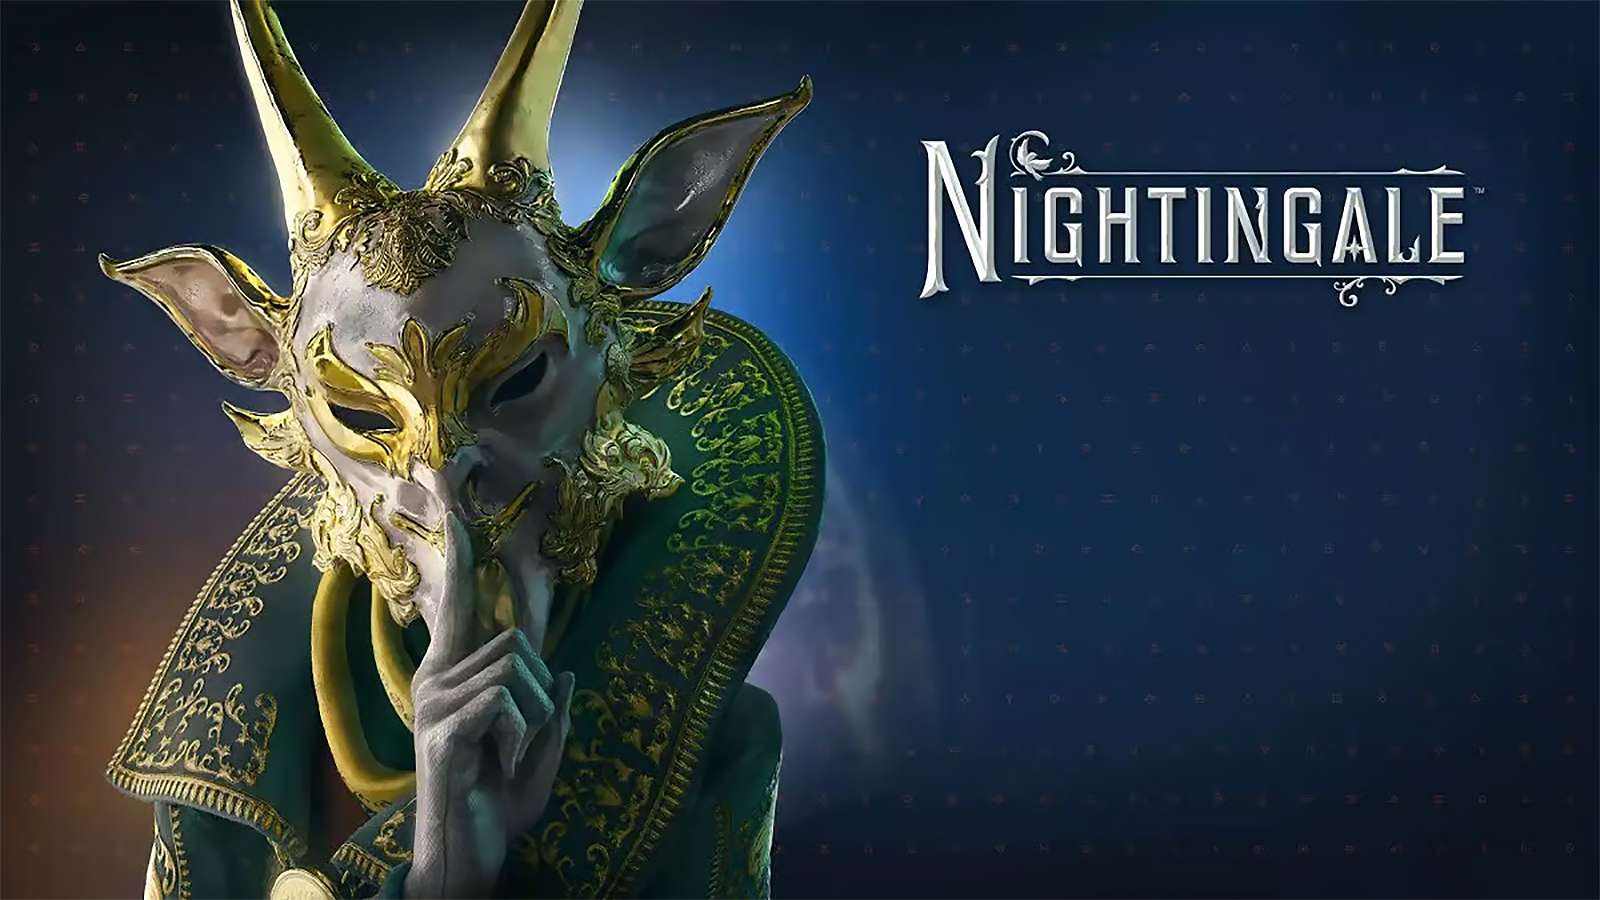 Personnage de Nightingale avec logo du jeu